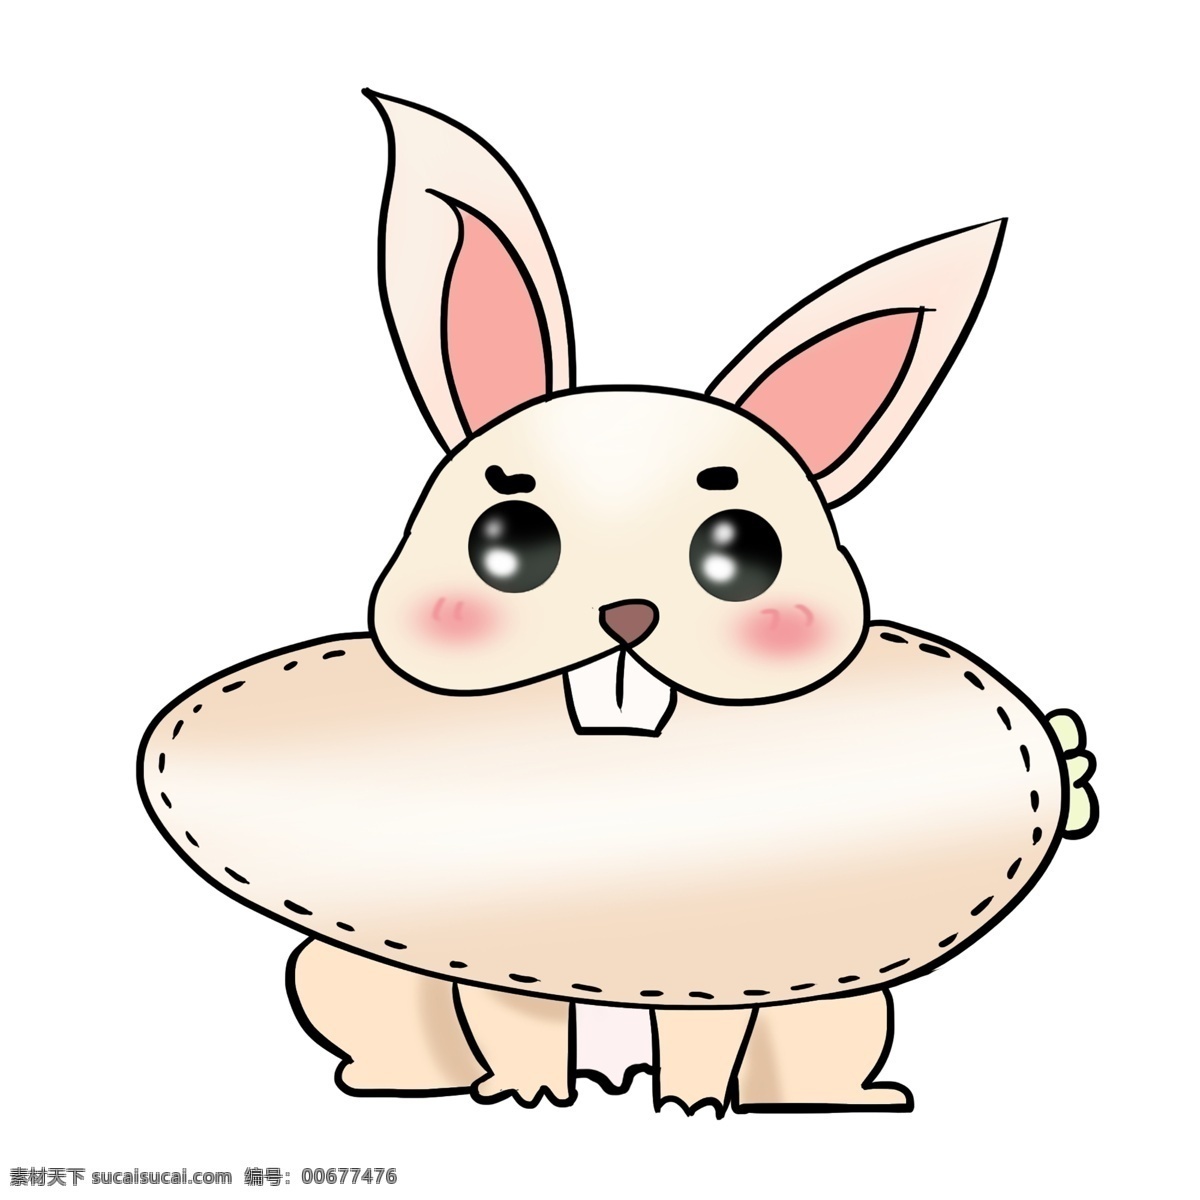 手绘 吃 萝卜 兔子 插画 白色的兔子 白色的萝卜 卡通插画 手绘兔子插画 长长的牙齿 拟人的兔子